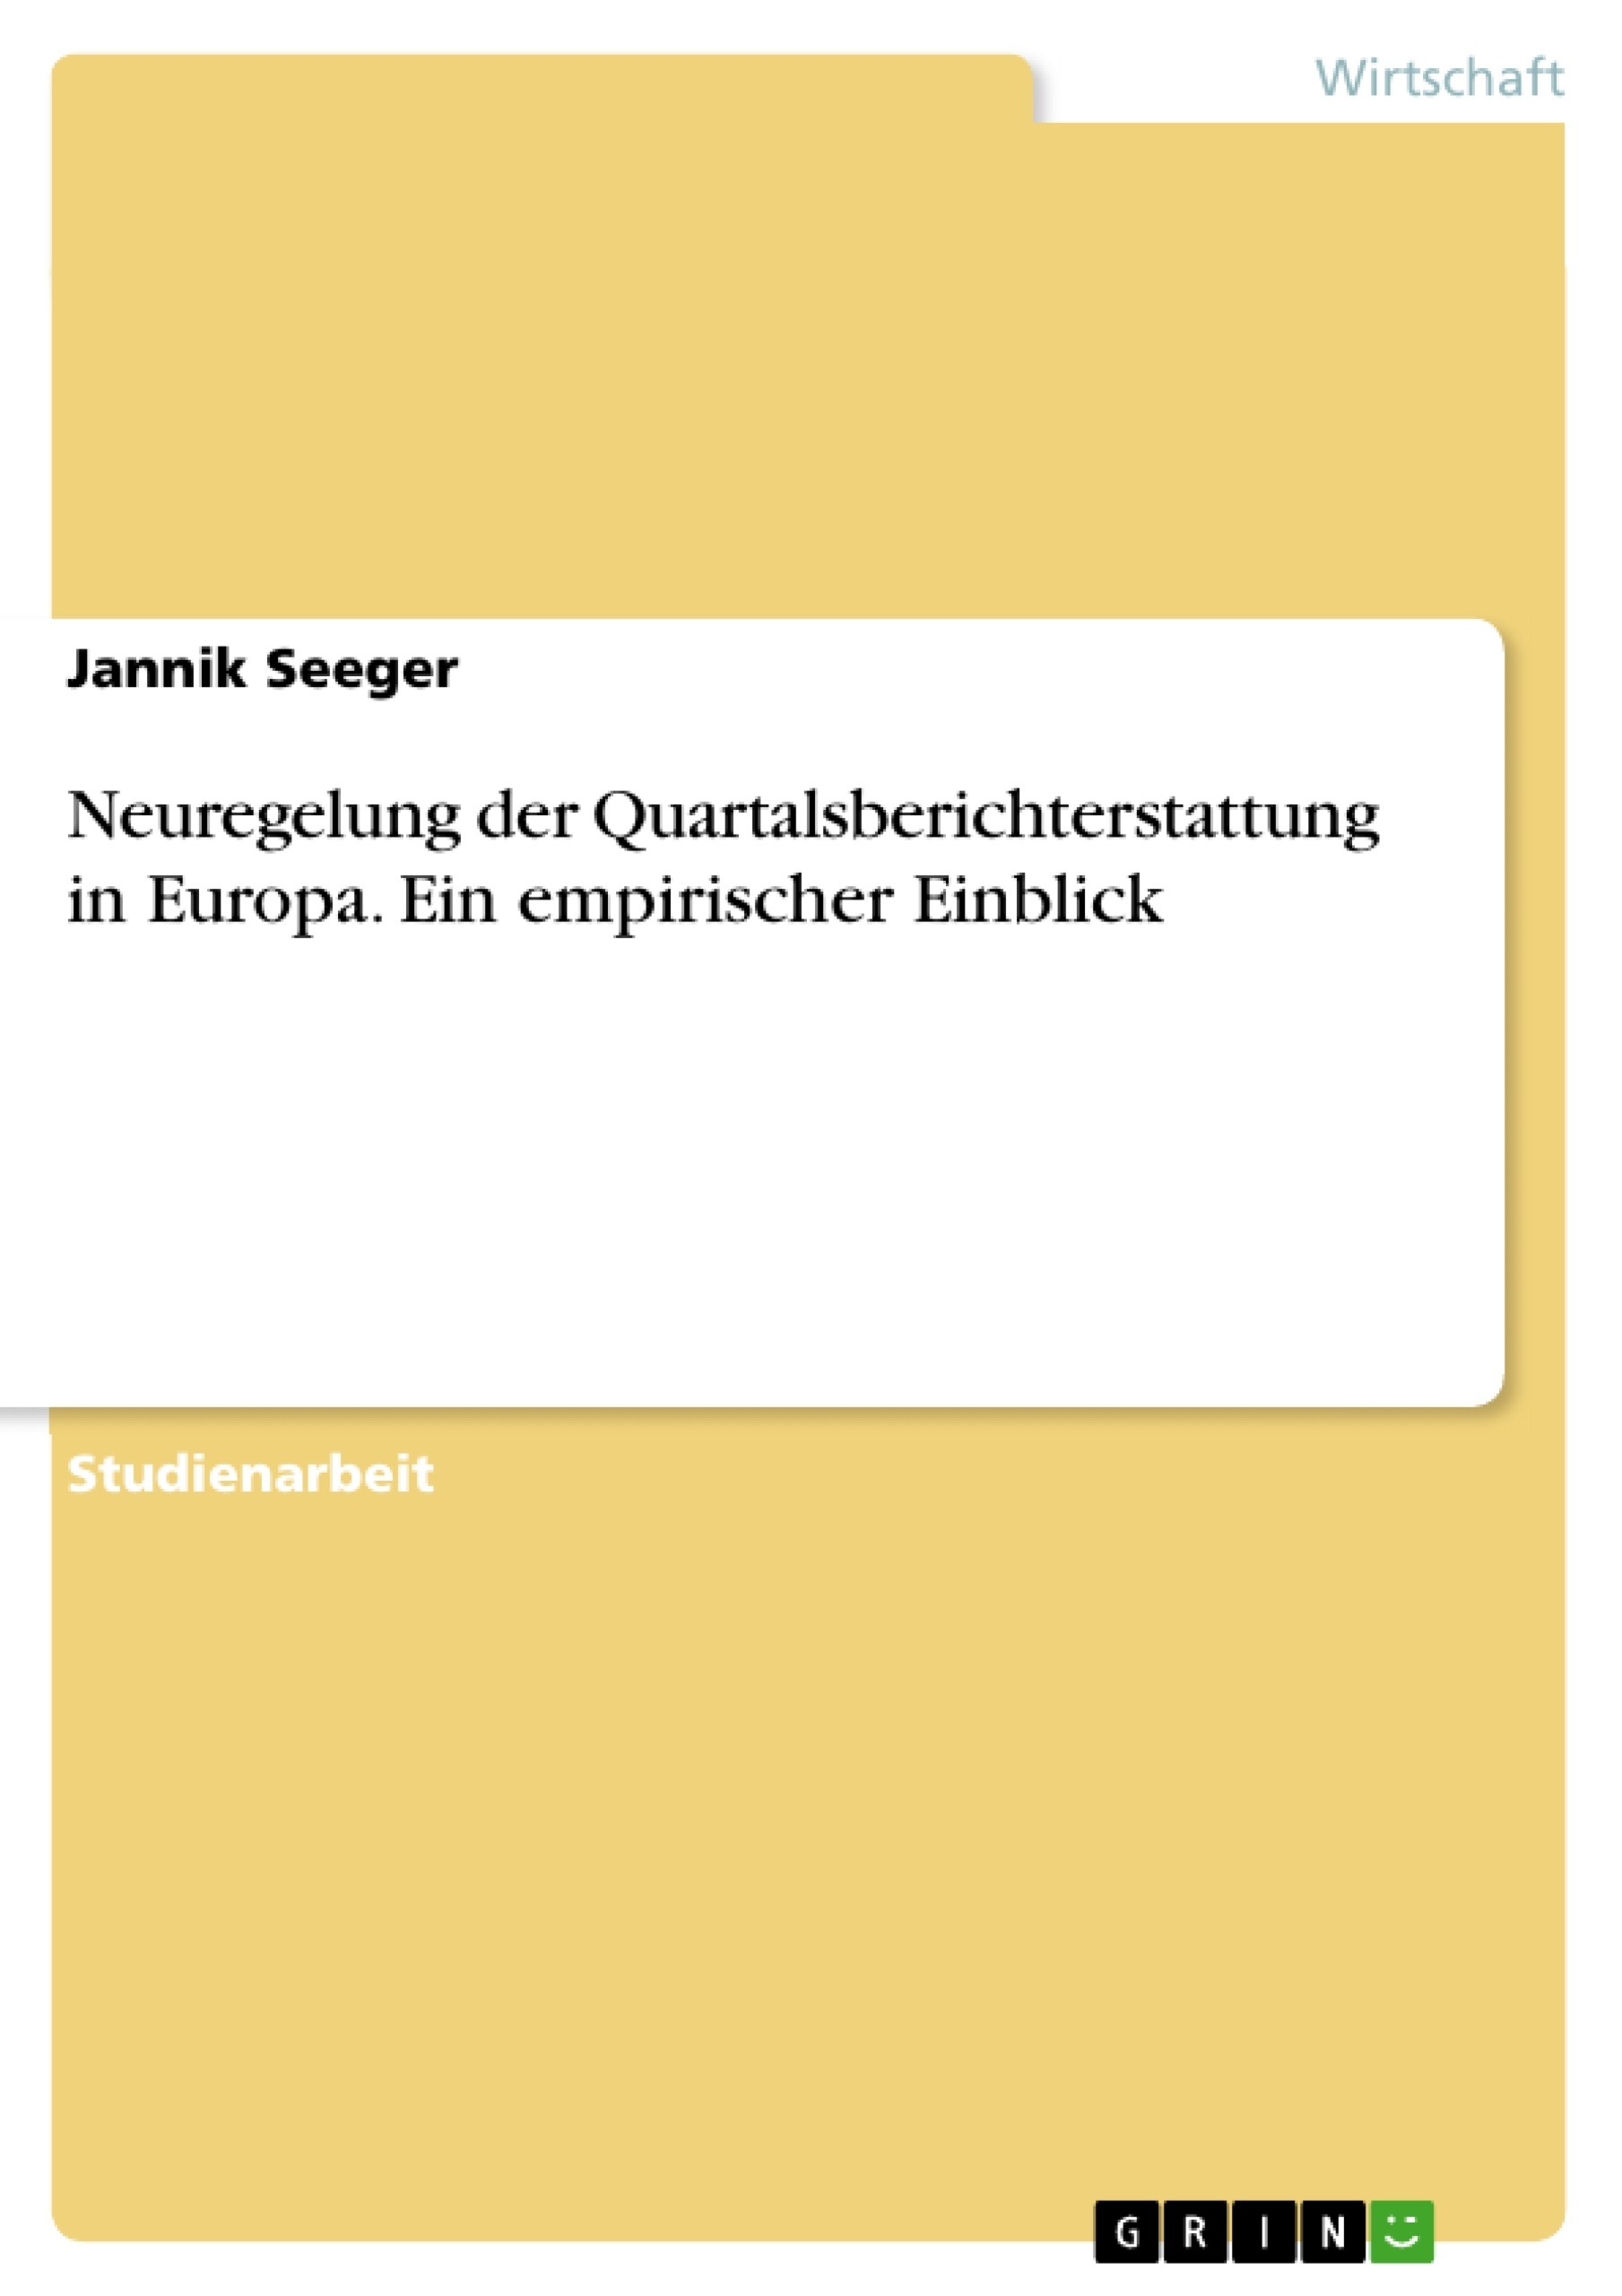 Título: Neuregelung der Quartalsberichterstattung in Europa. Ein empirischer Einblick